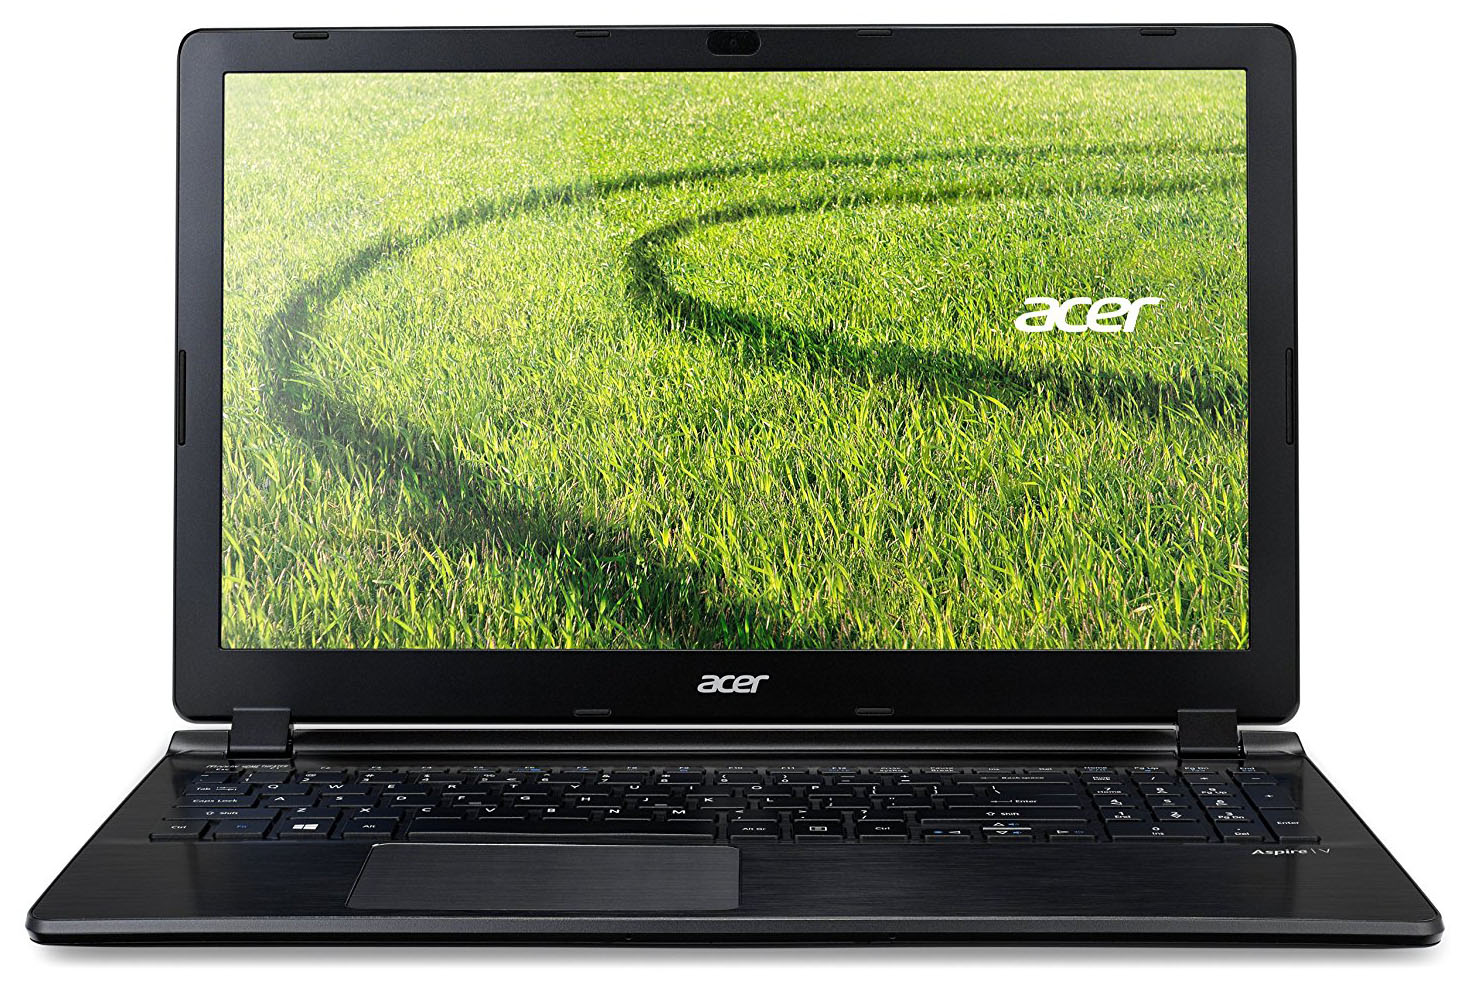 Acer Aspire V5-572 - Specs, and | LaptopMedia.com